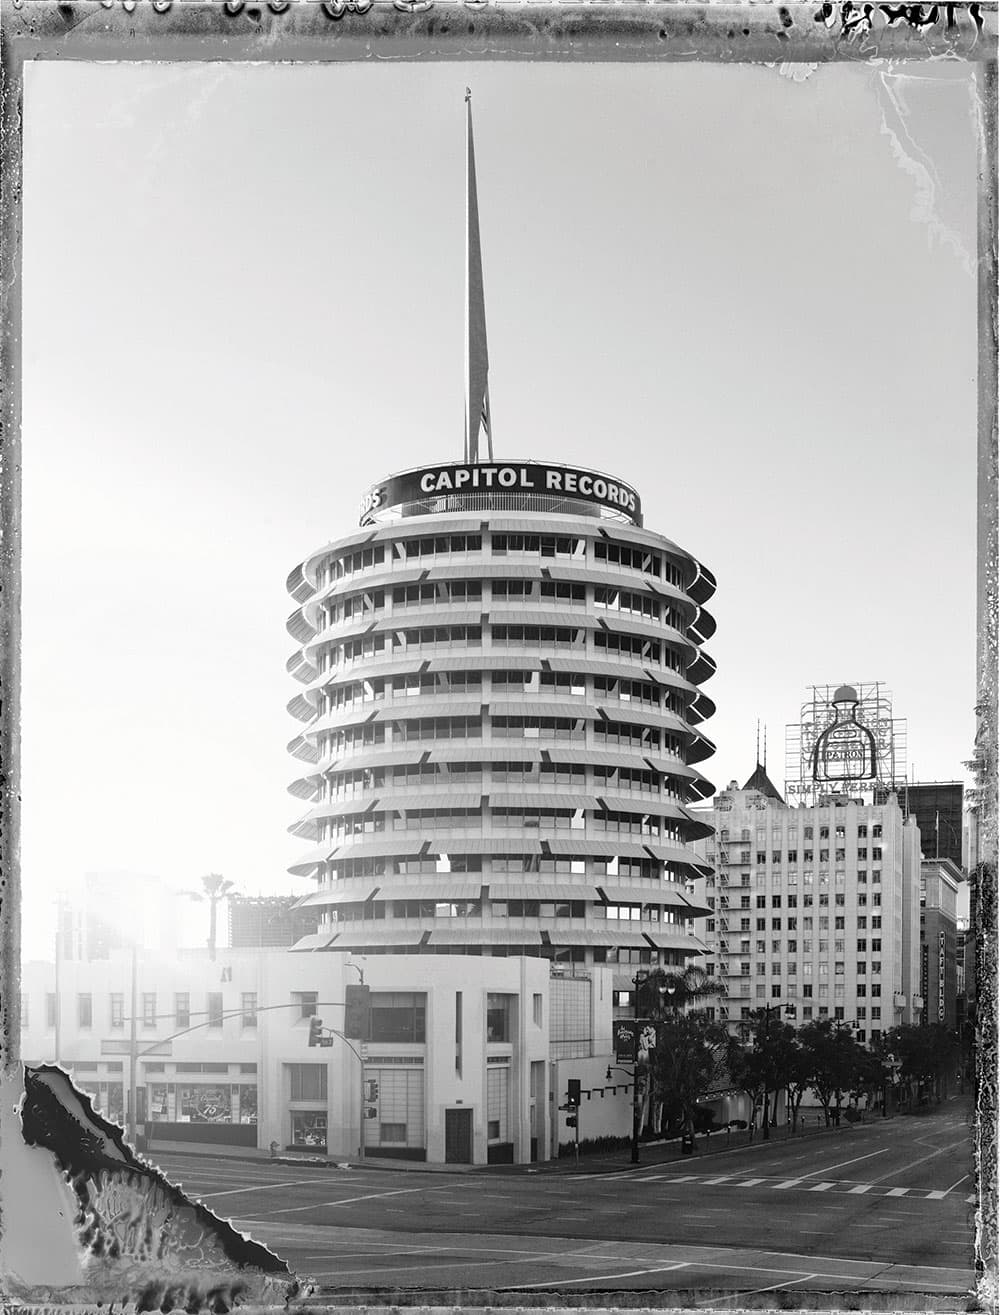 Lost in LA Capitol Records